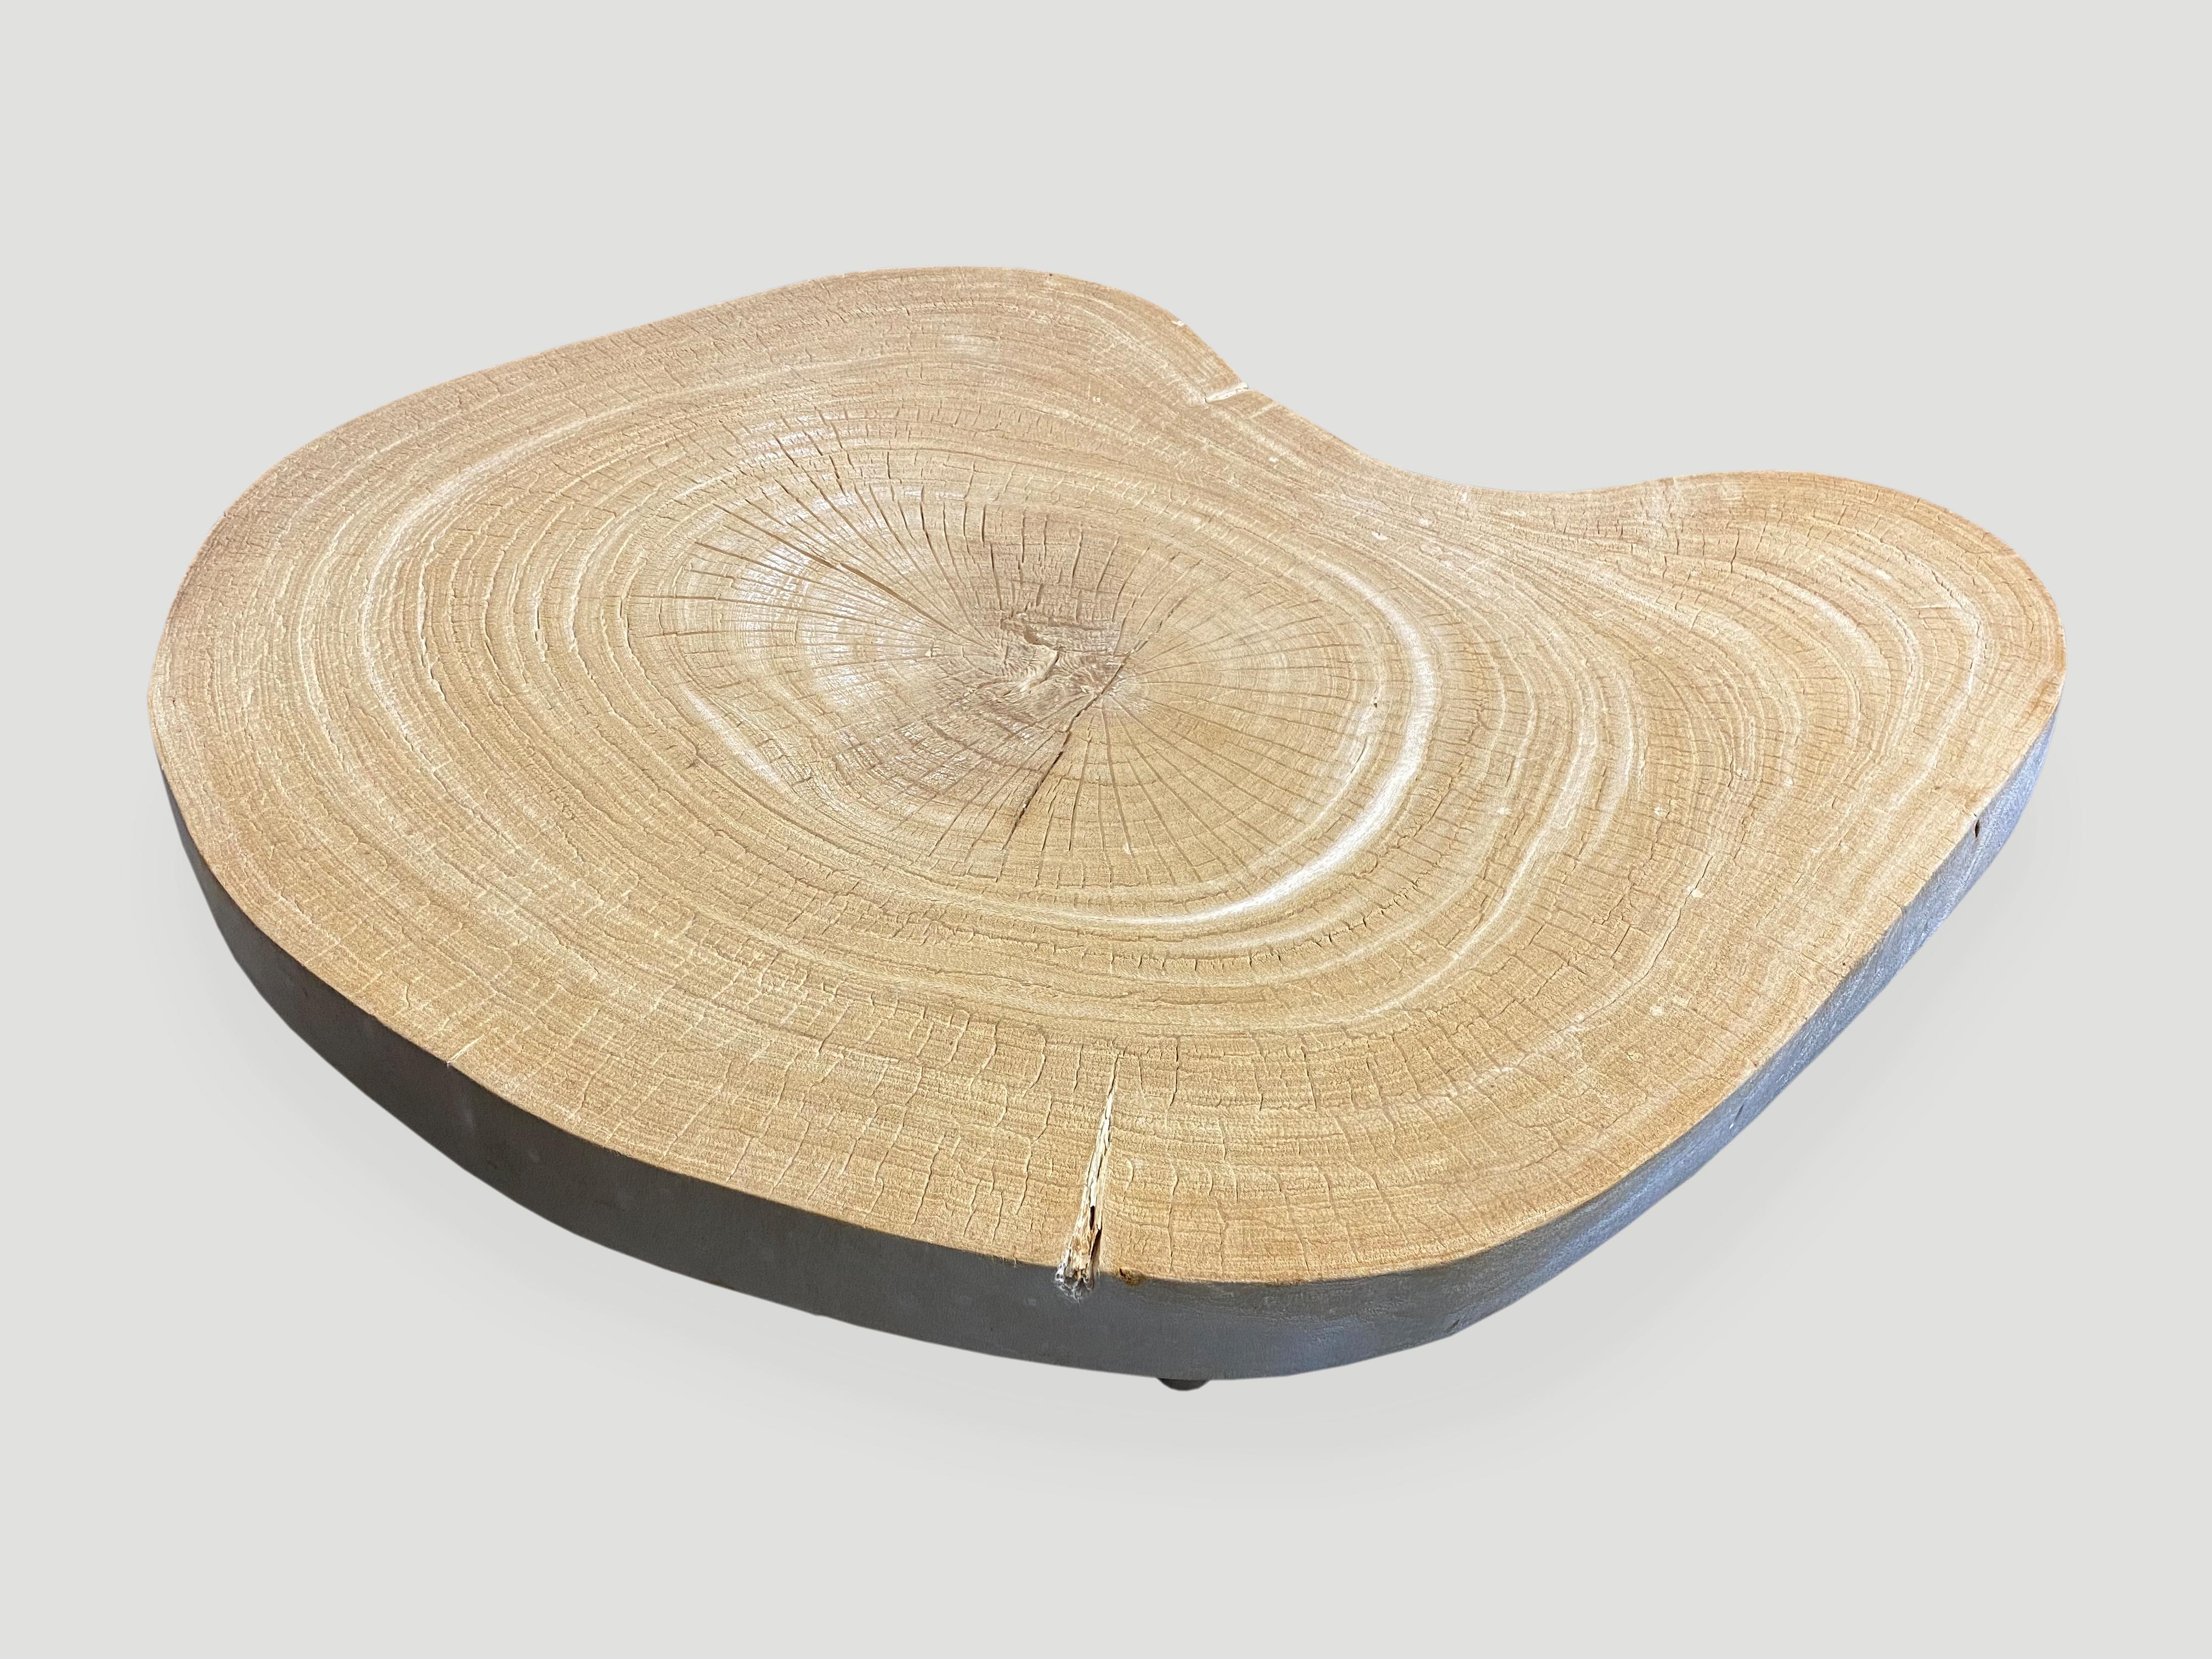 Wood Andrianna Shamaris Amorphous Single Slab Teak Mid-Century Modern Coffee Table For Sale